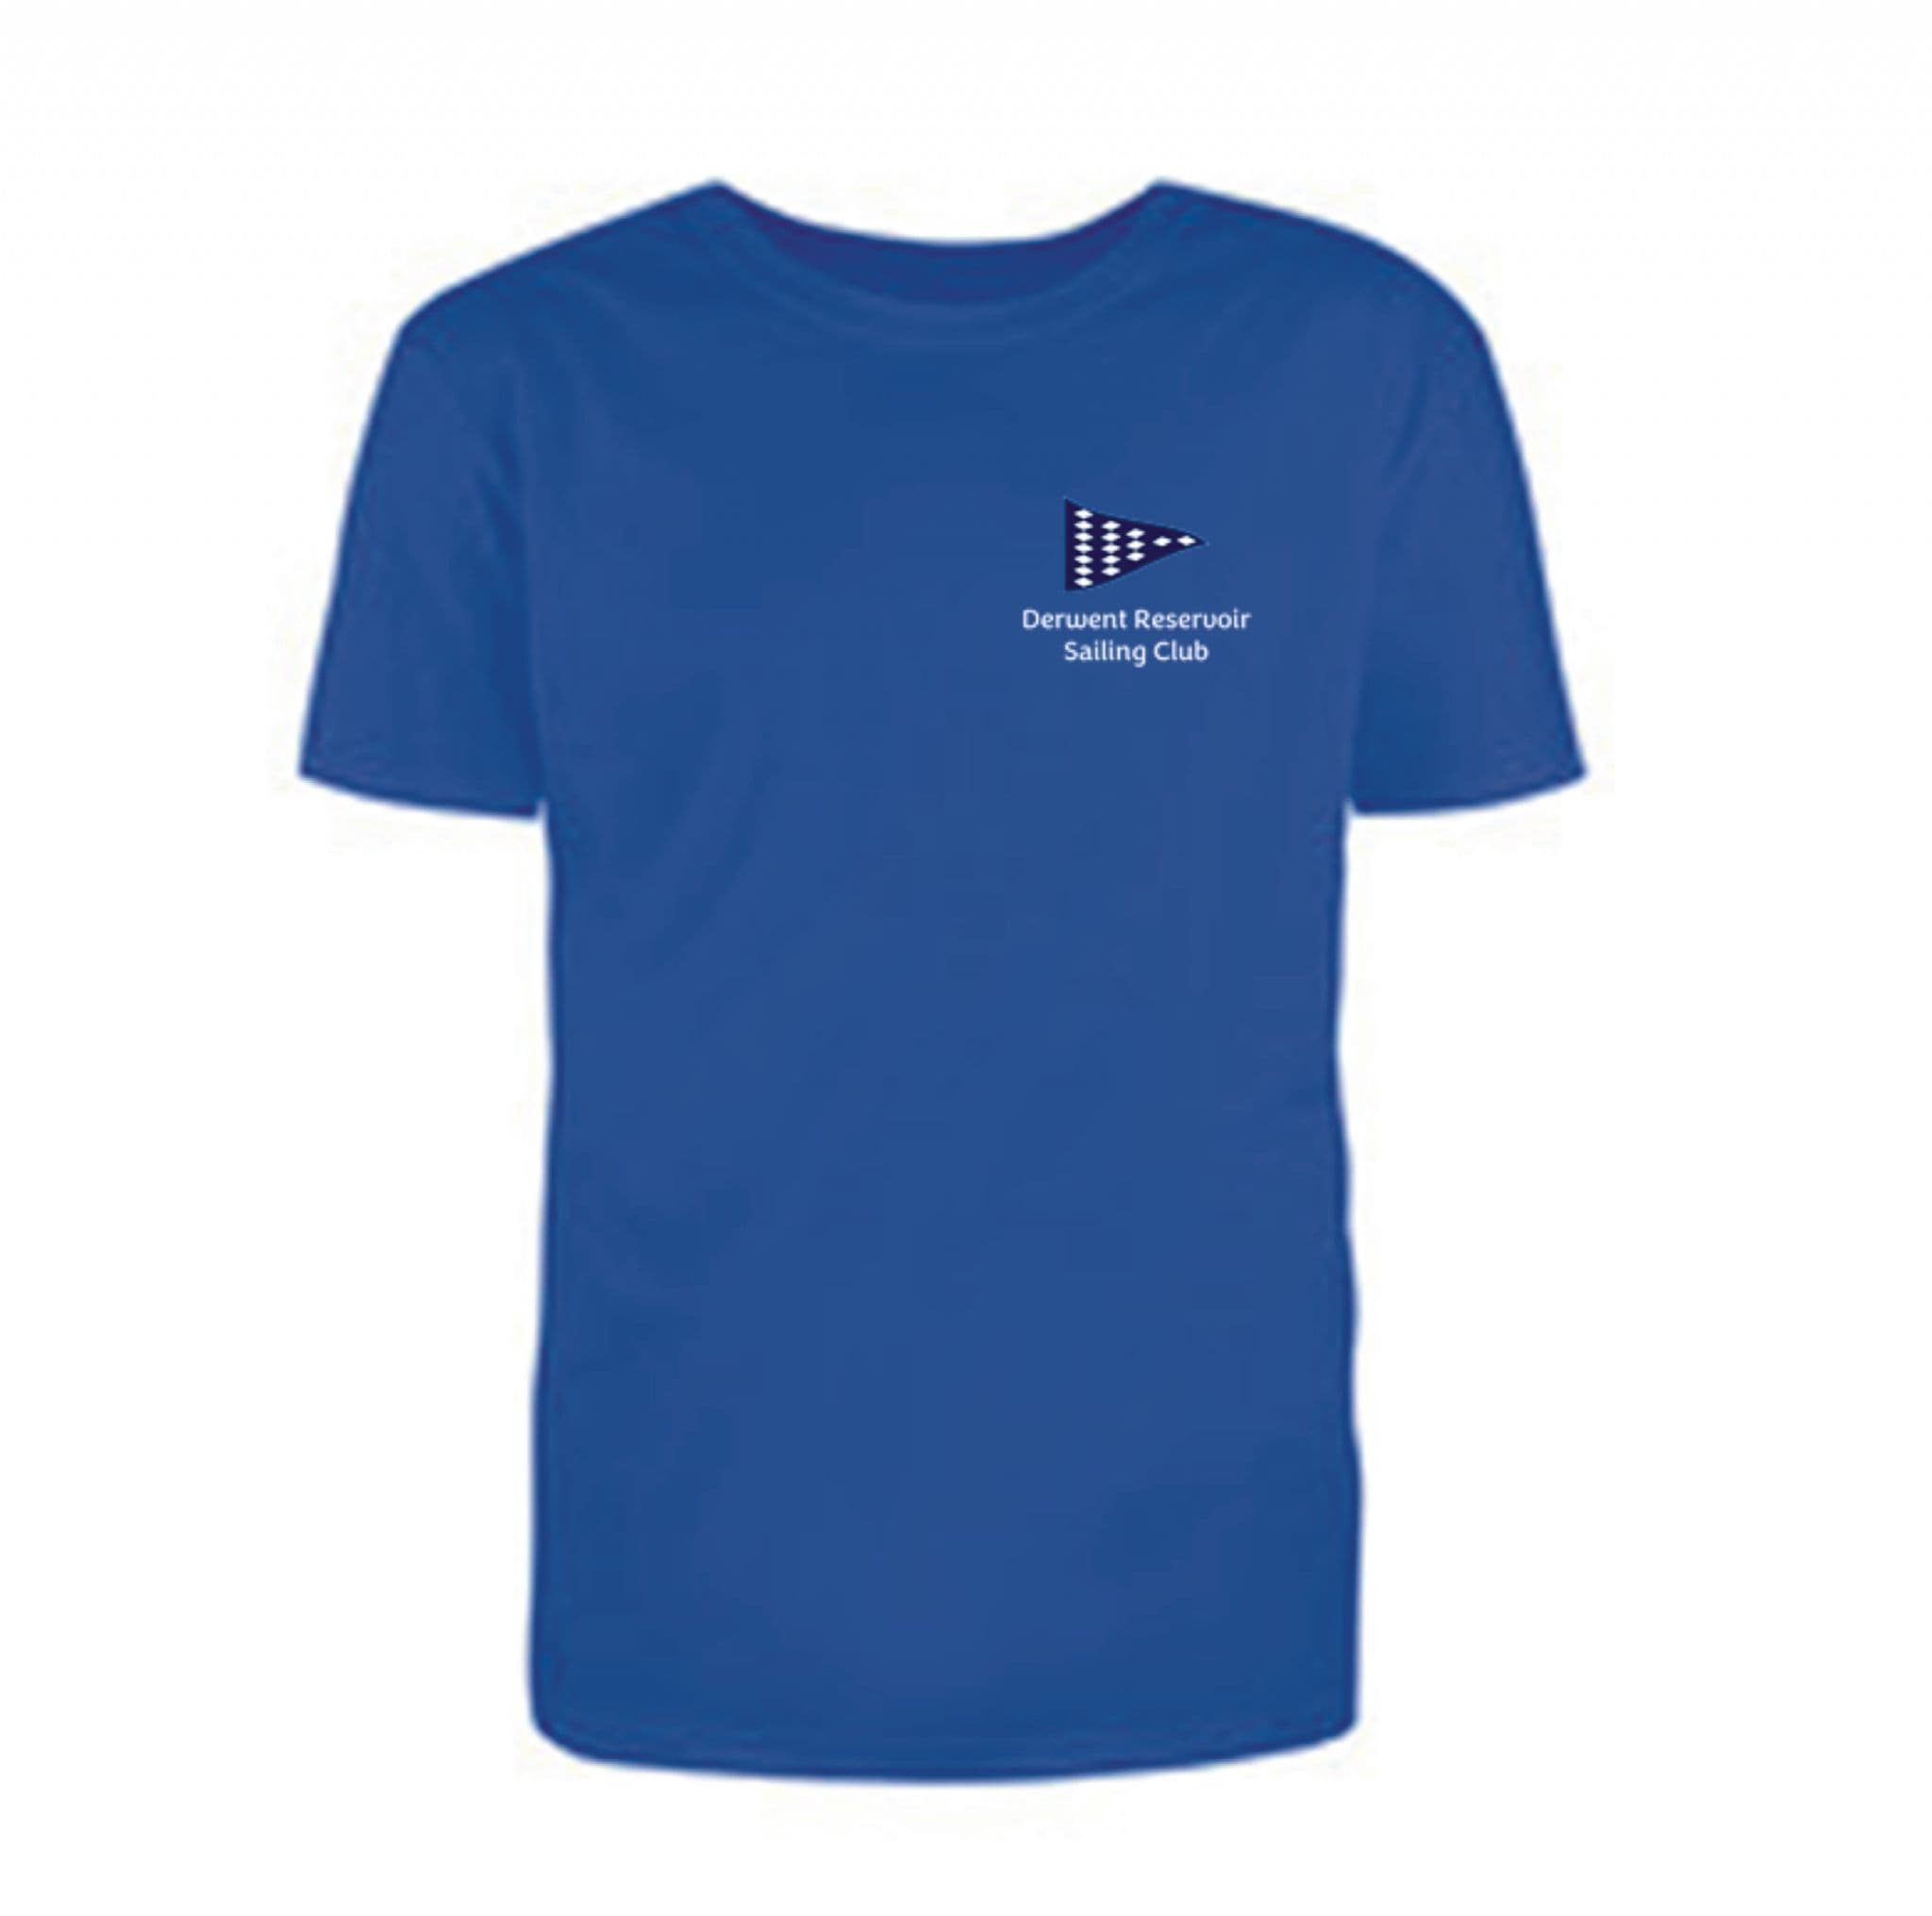 Derwent Reservoir Sailing Club Ladies Sapphire T-Shirt JC005